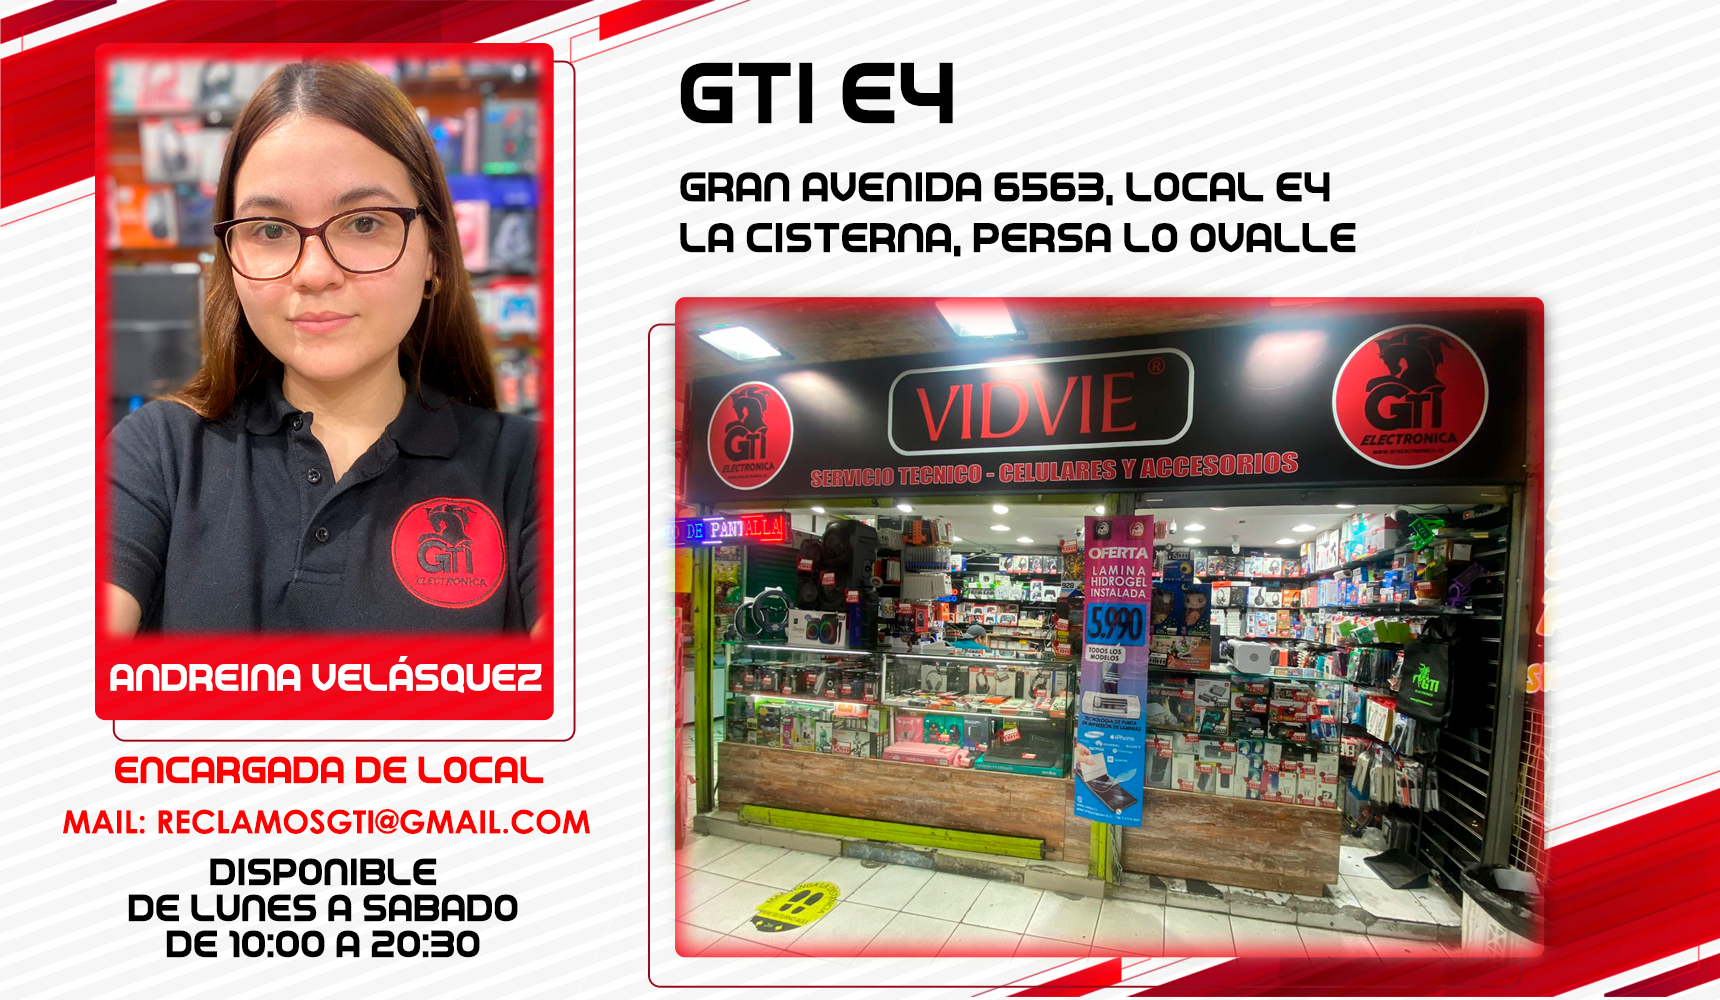 GTI Local E4